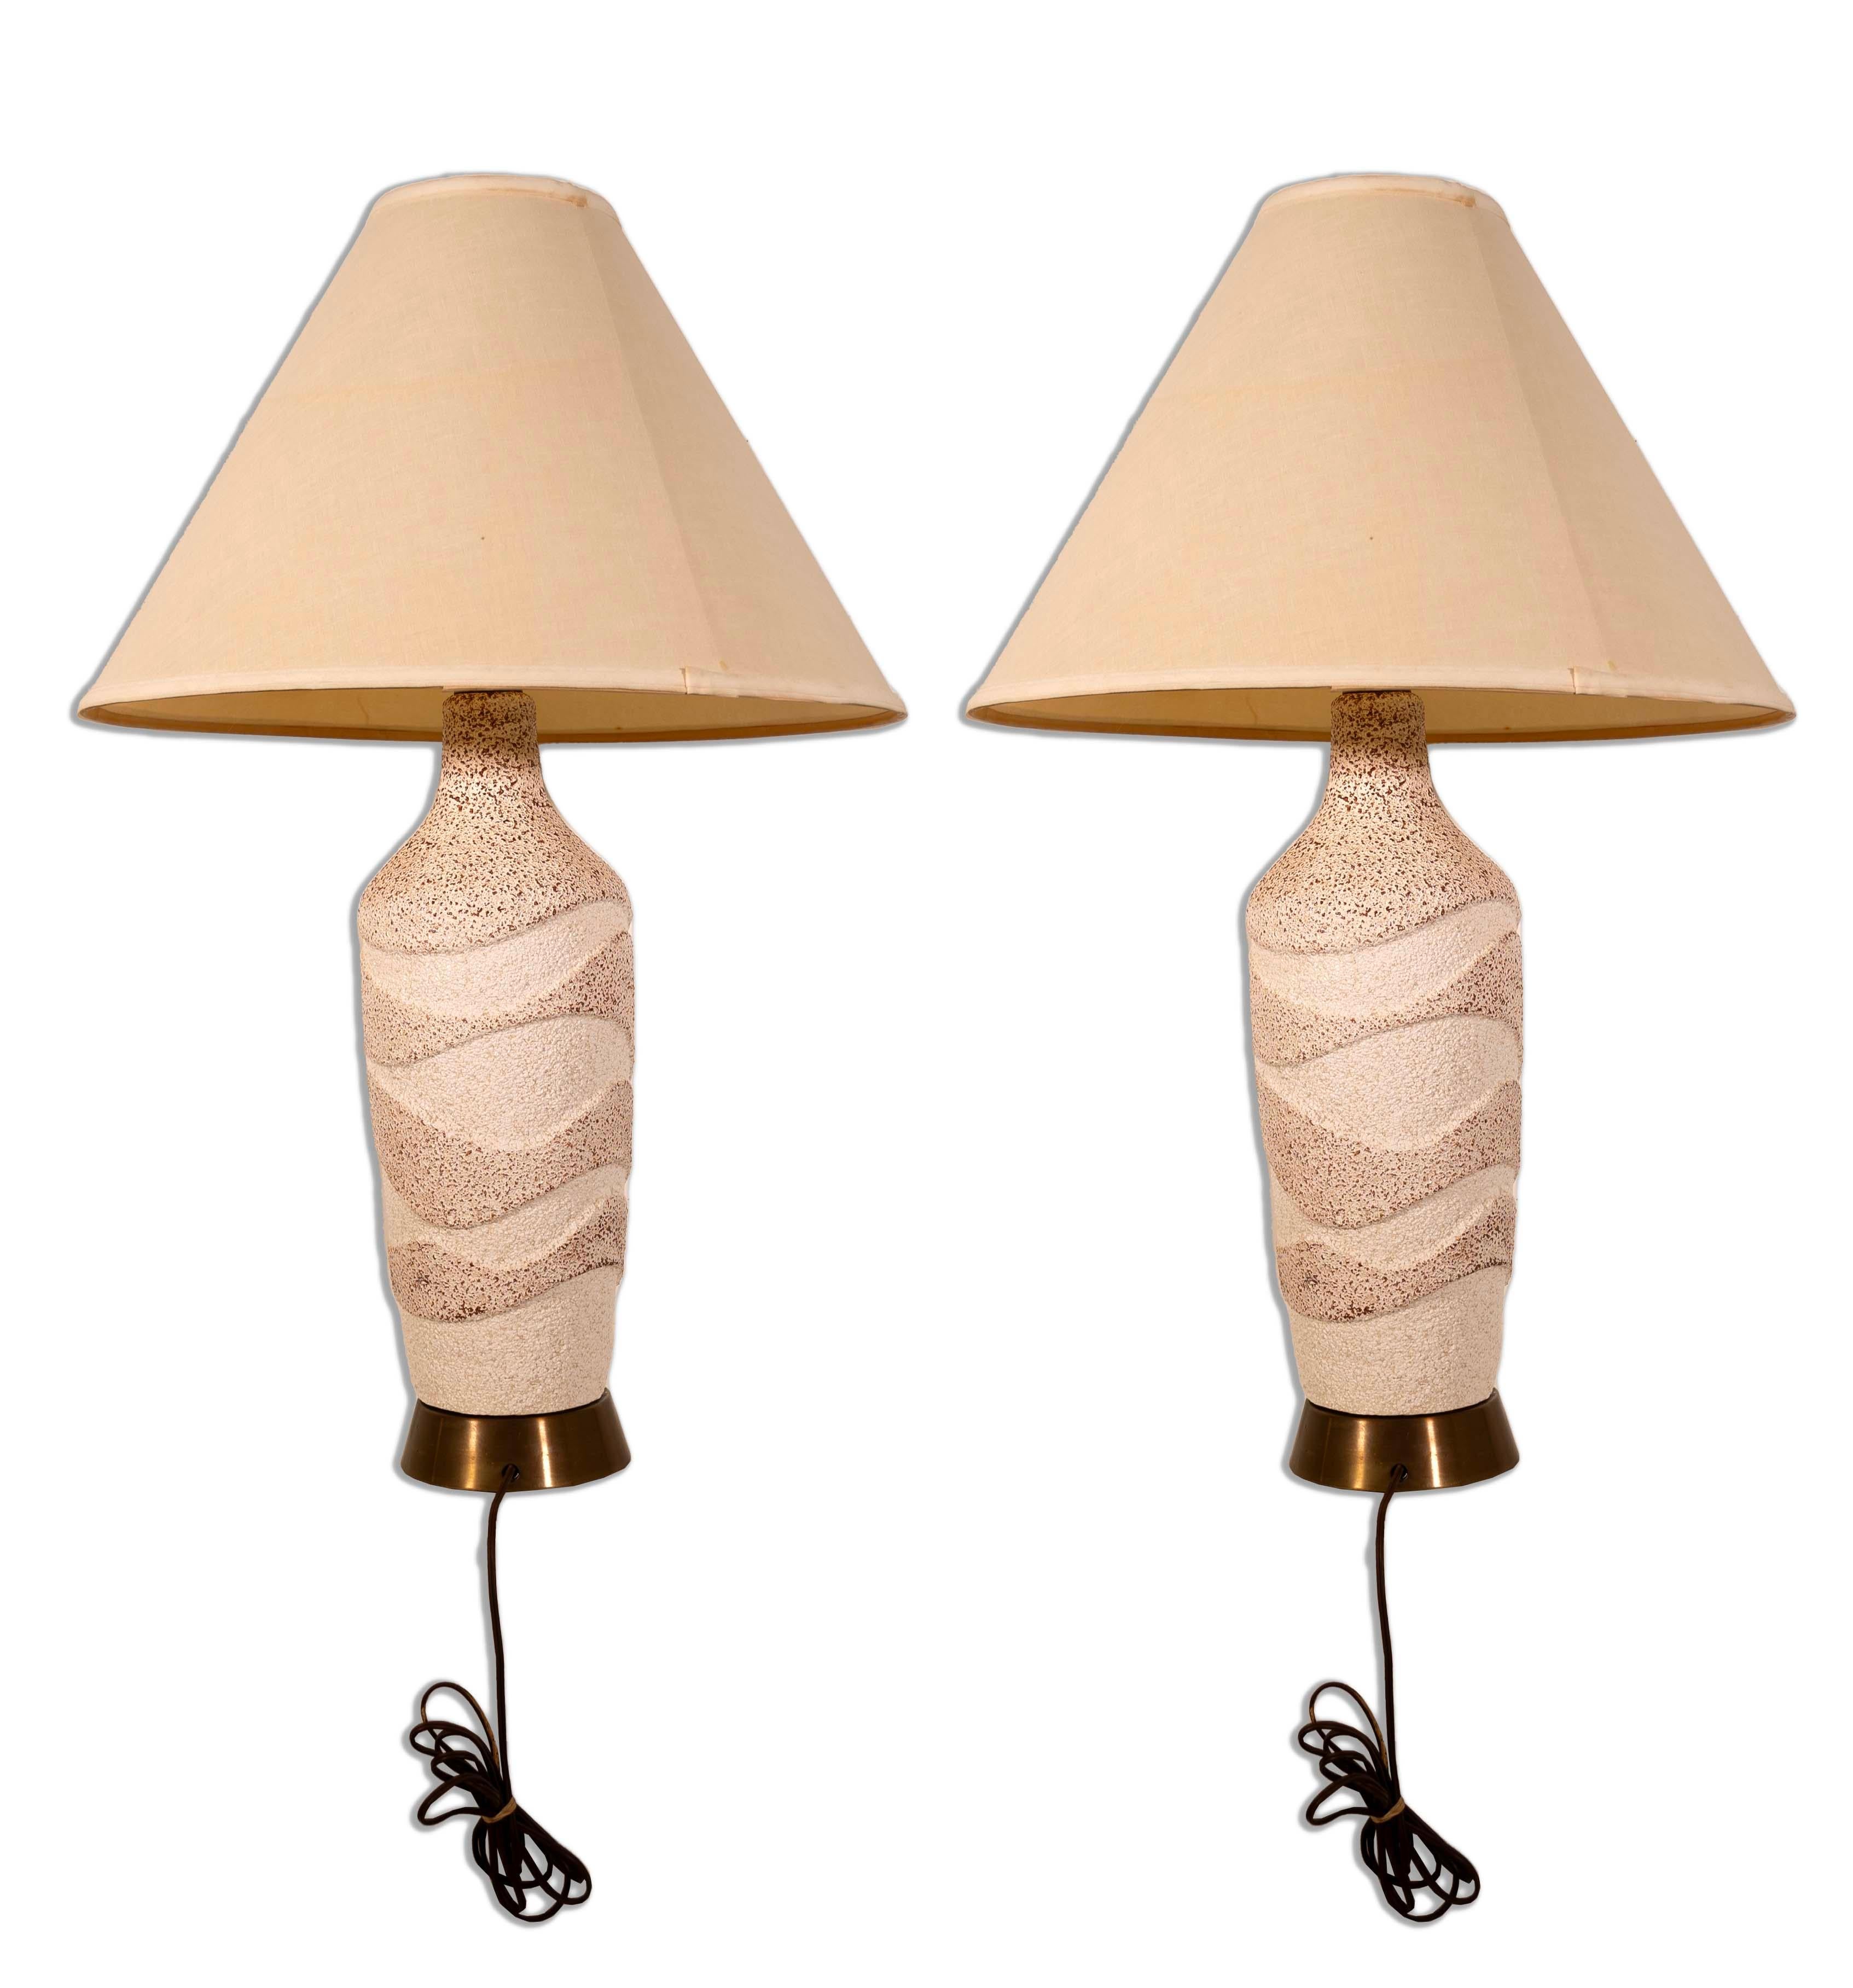 Chaleureuse et accueillante, cette paire de lampes en céramique texturée ondulée est la quintessence du charme moderne du milieu du siècle dernier. Le design ondulé unique de la base en céramique, associé à la douce lueur des abat-jour beiges, crée